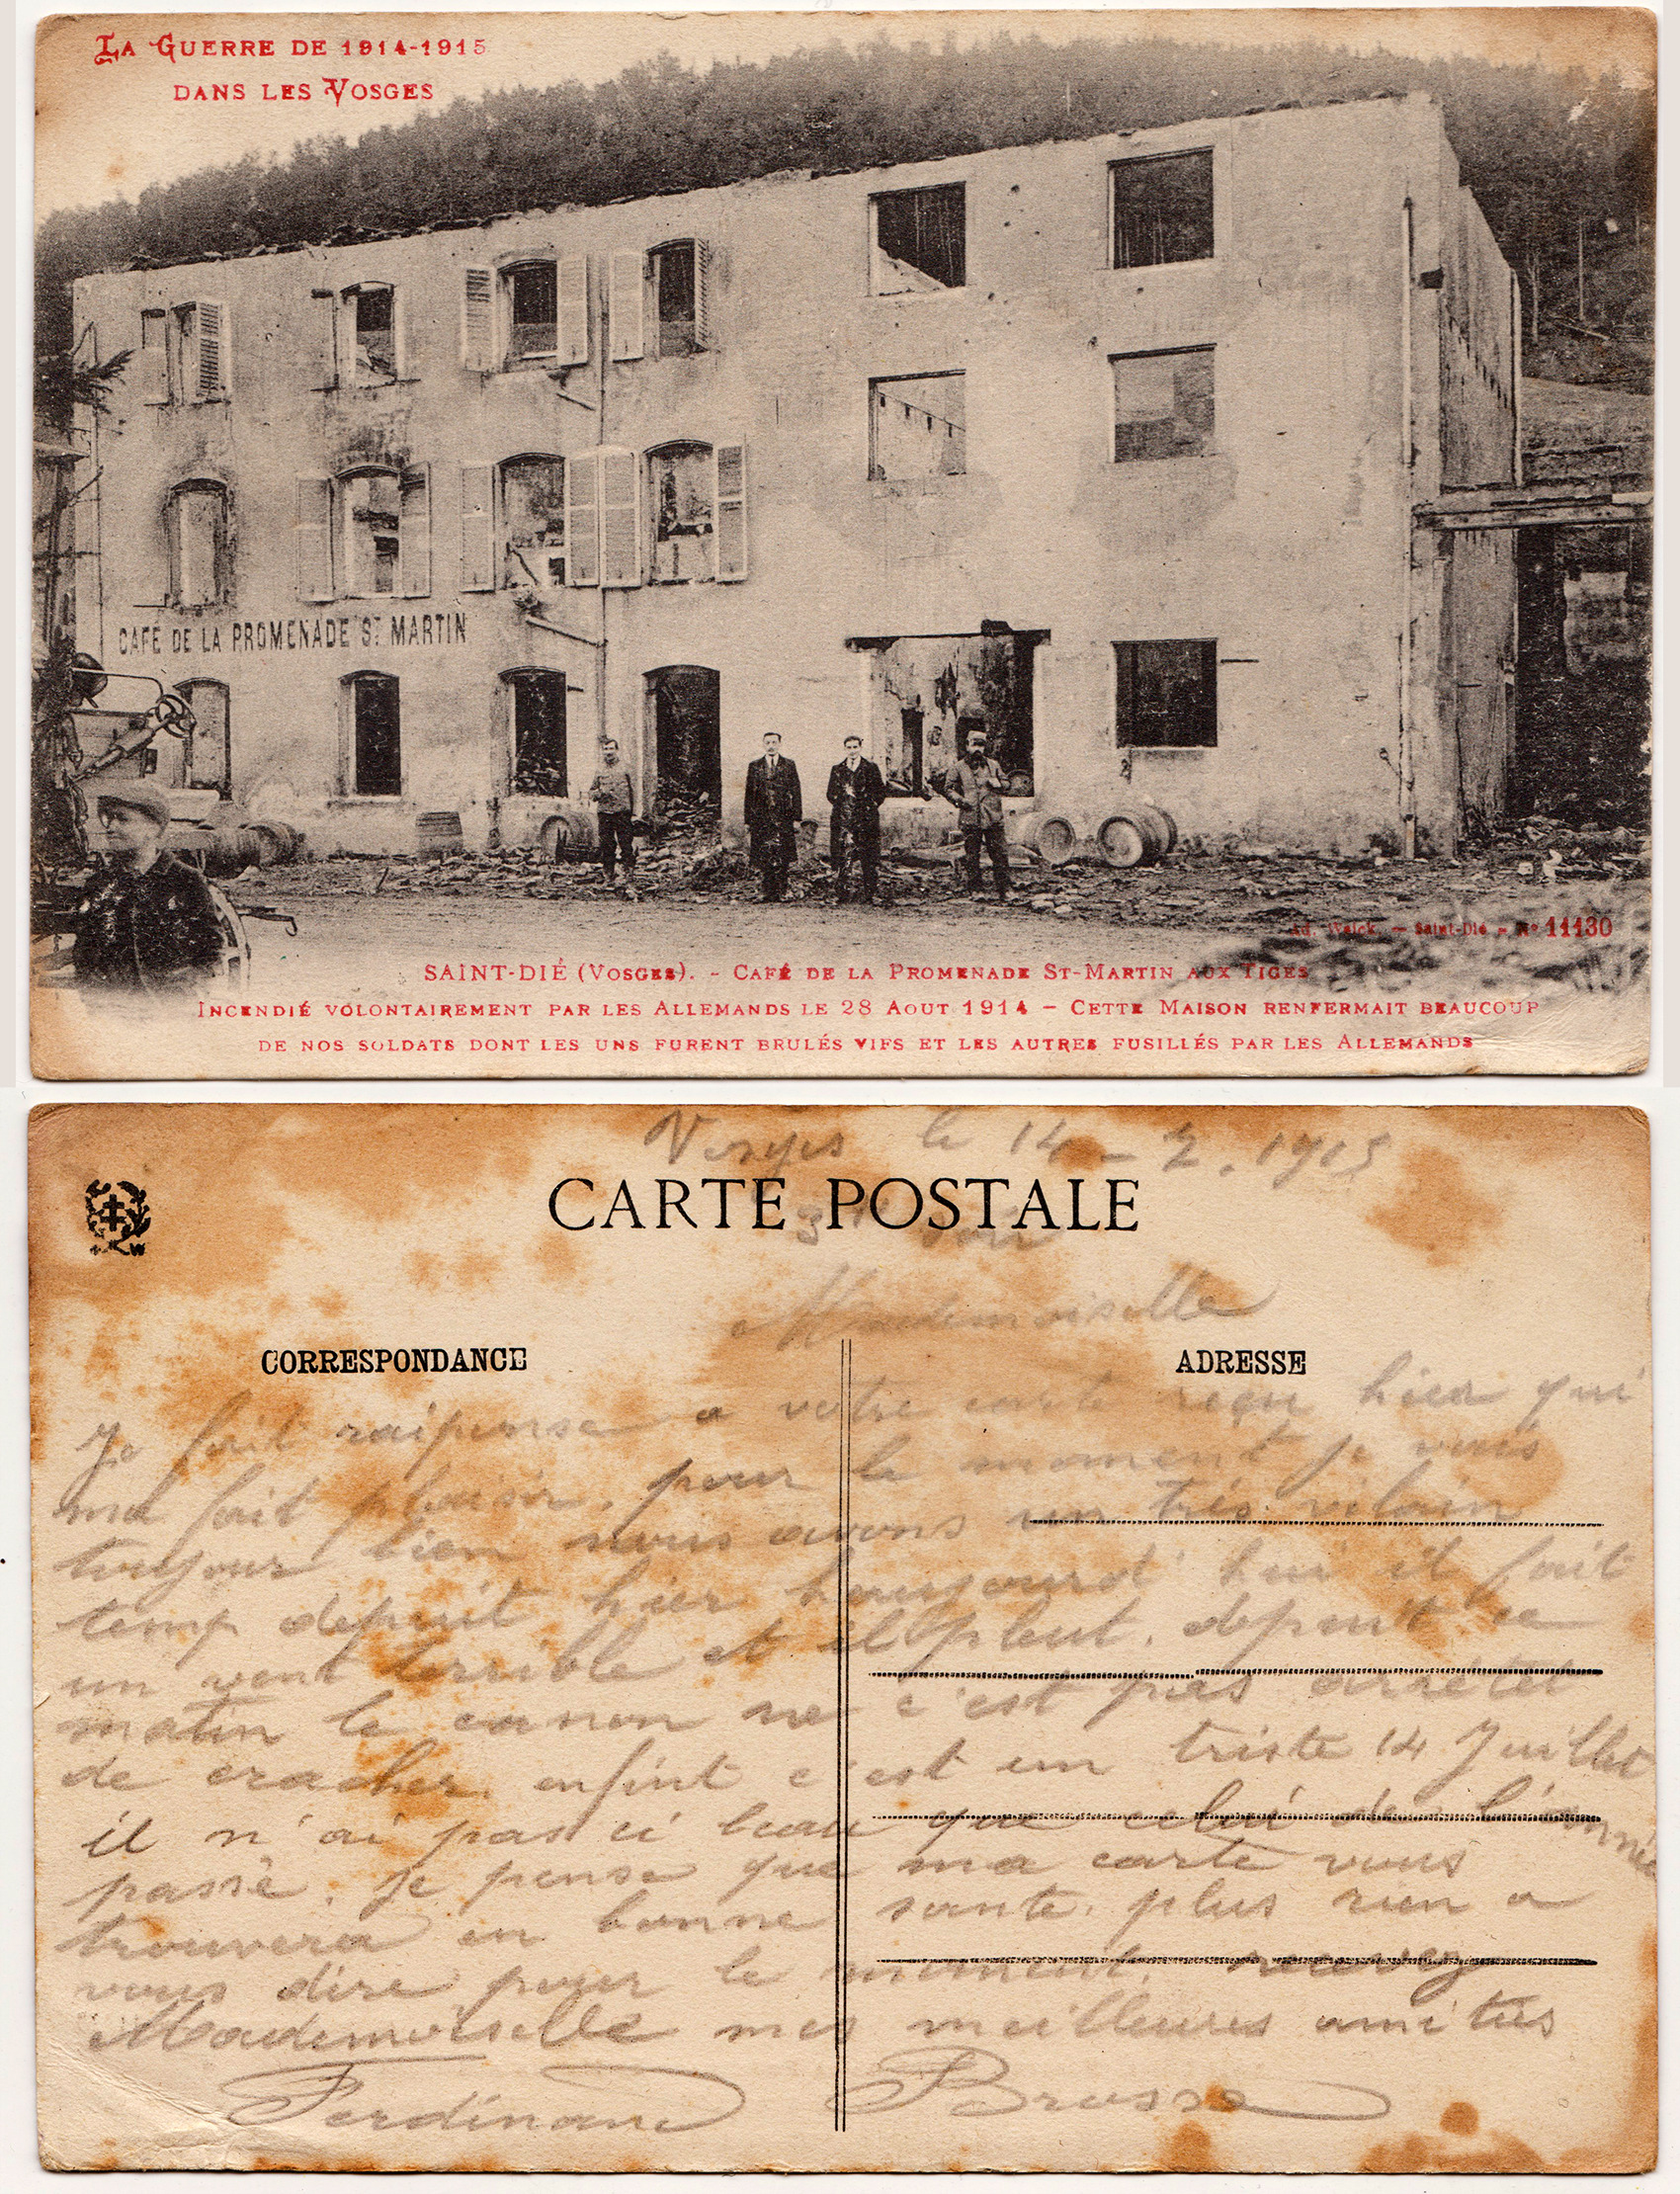 Cartes postales patriotiques françaises de la Grande Guerre - recensement - Page 3 Bc2619a360d7aa0591a300a7bc727e5aad5963e0